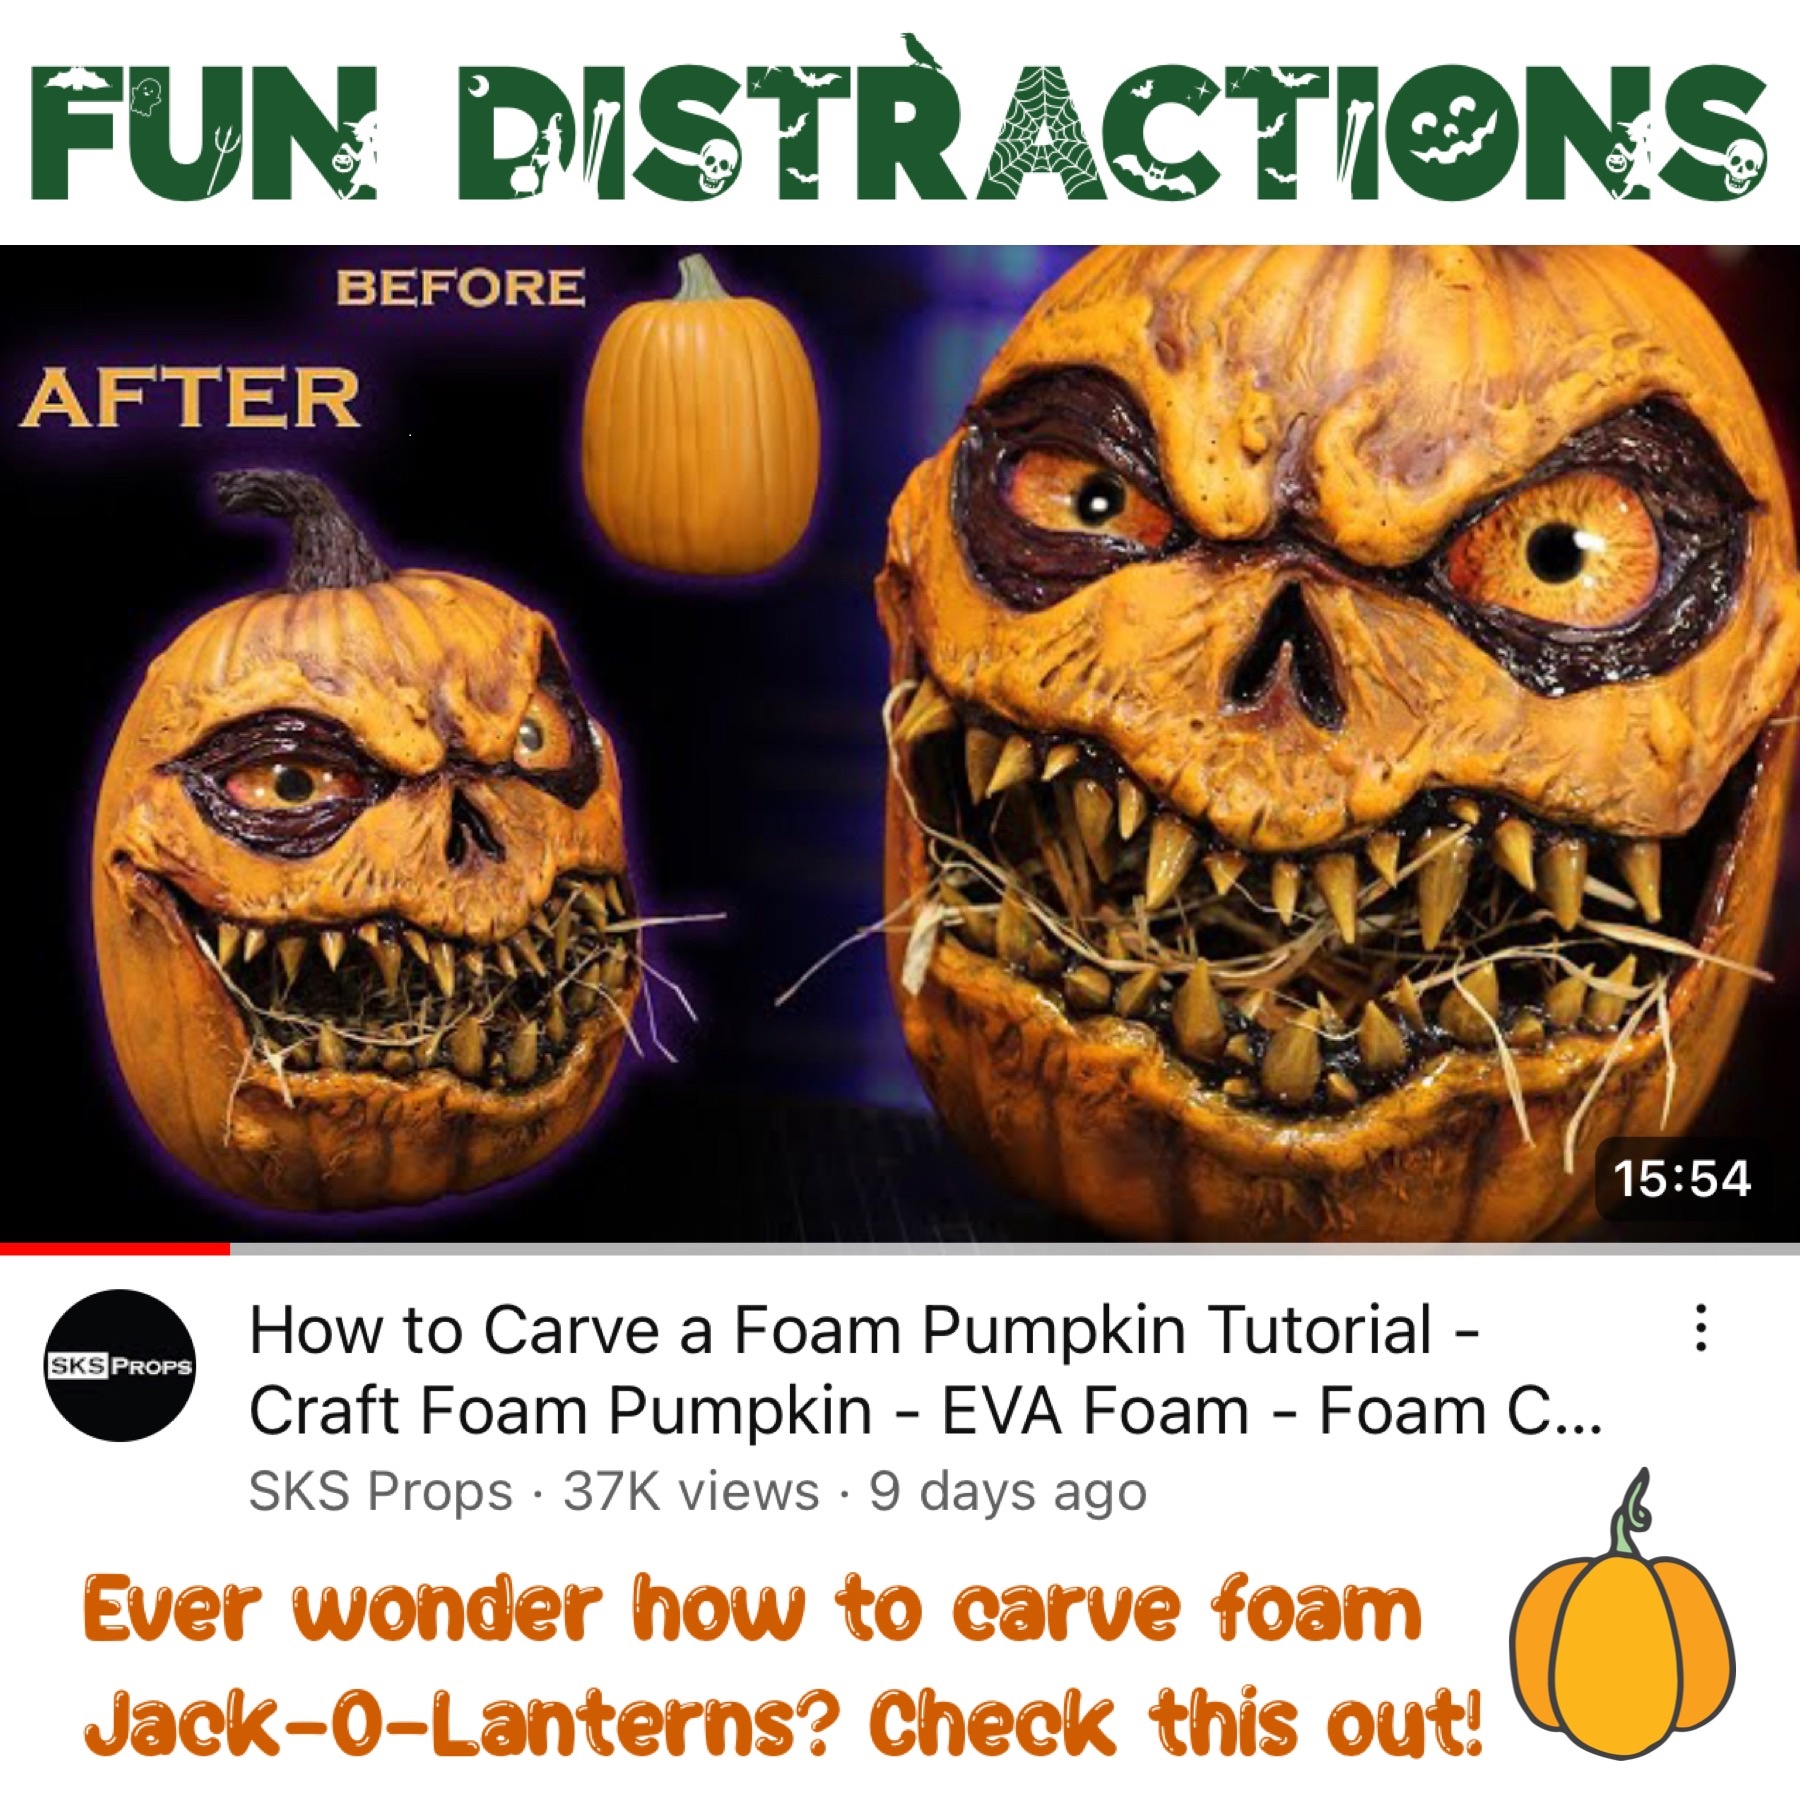 Image of carved foam pumpkins